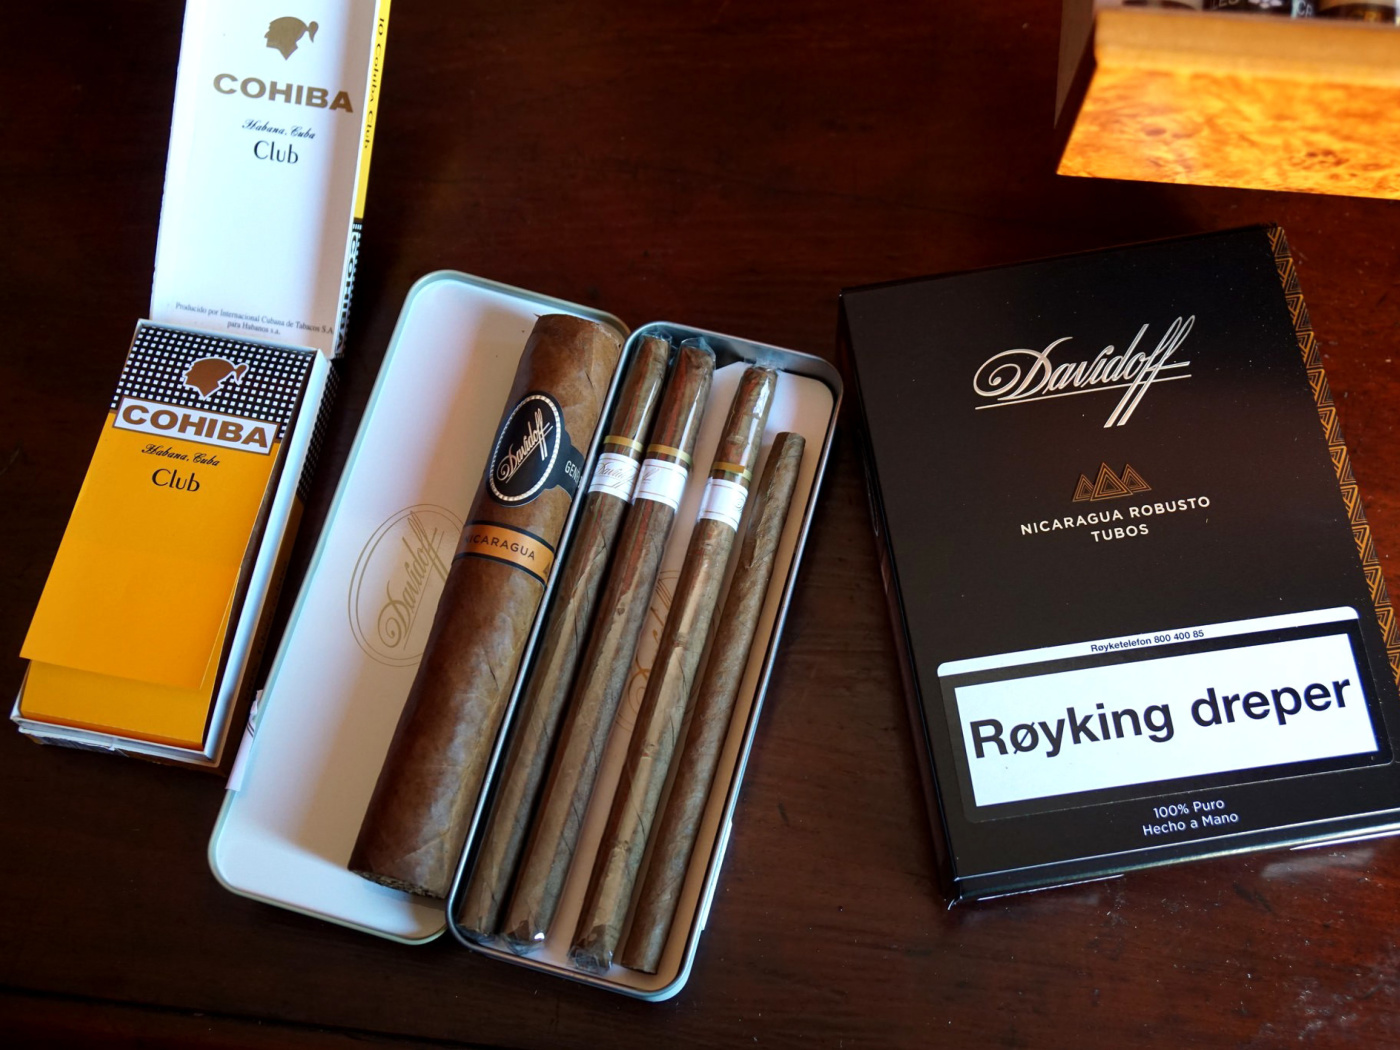 Sfondi Davidoff and Cohiba Cigars 1400x1050